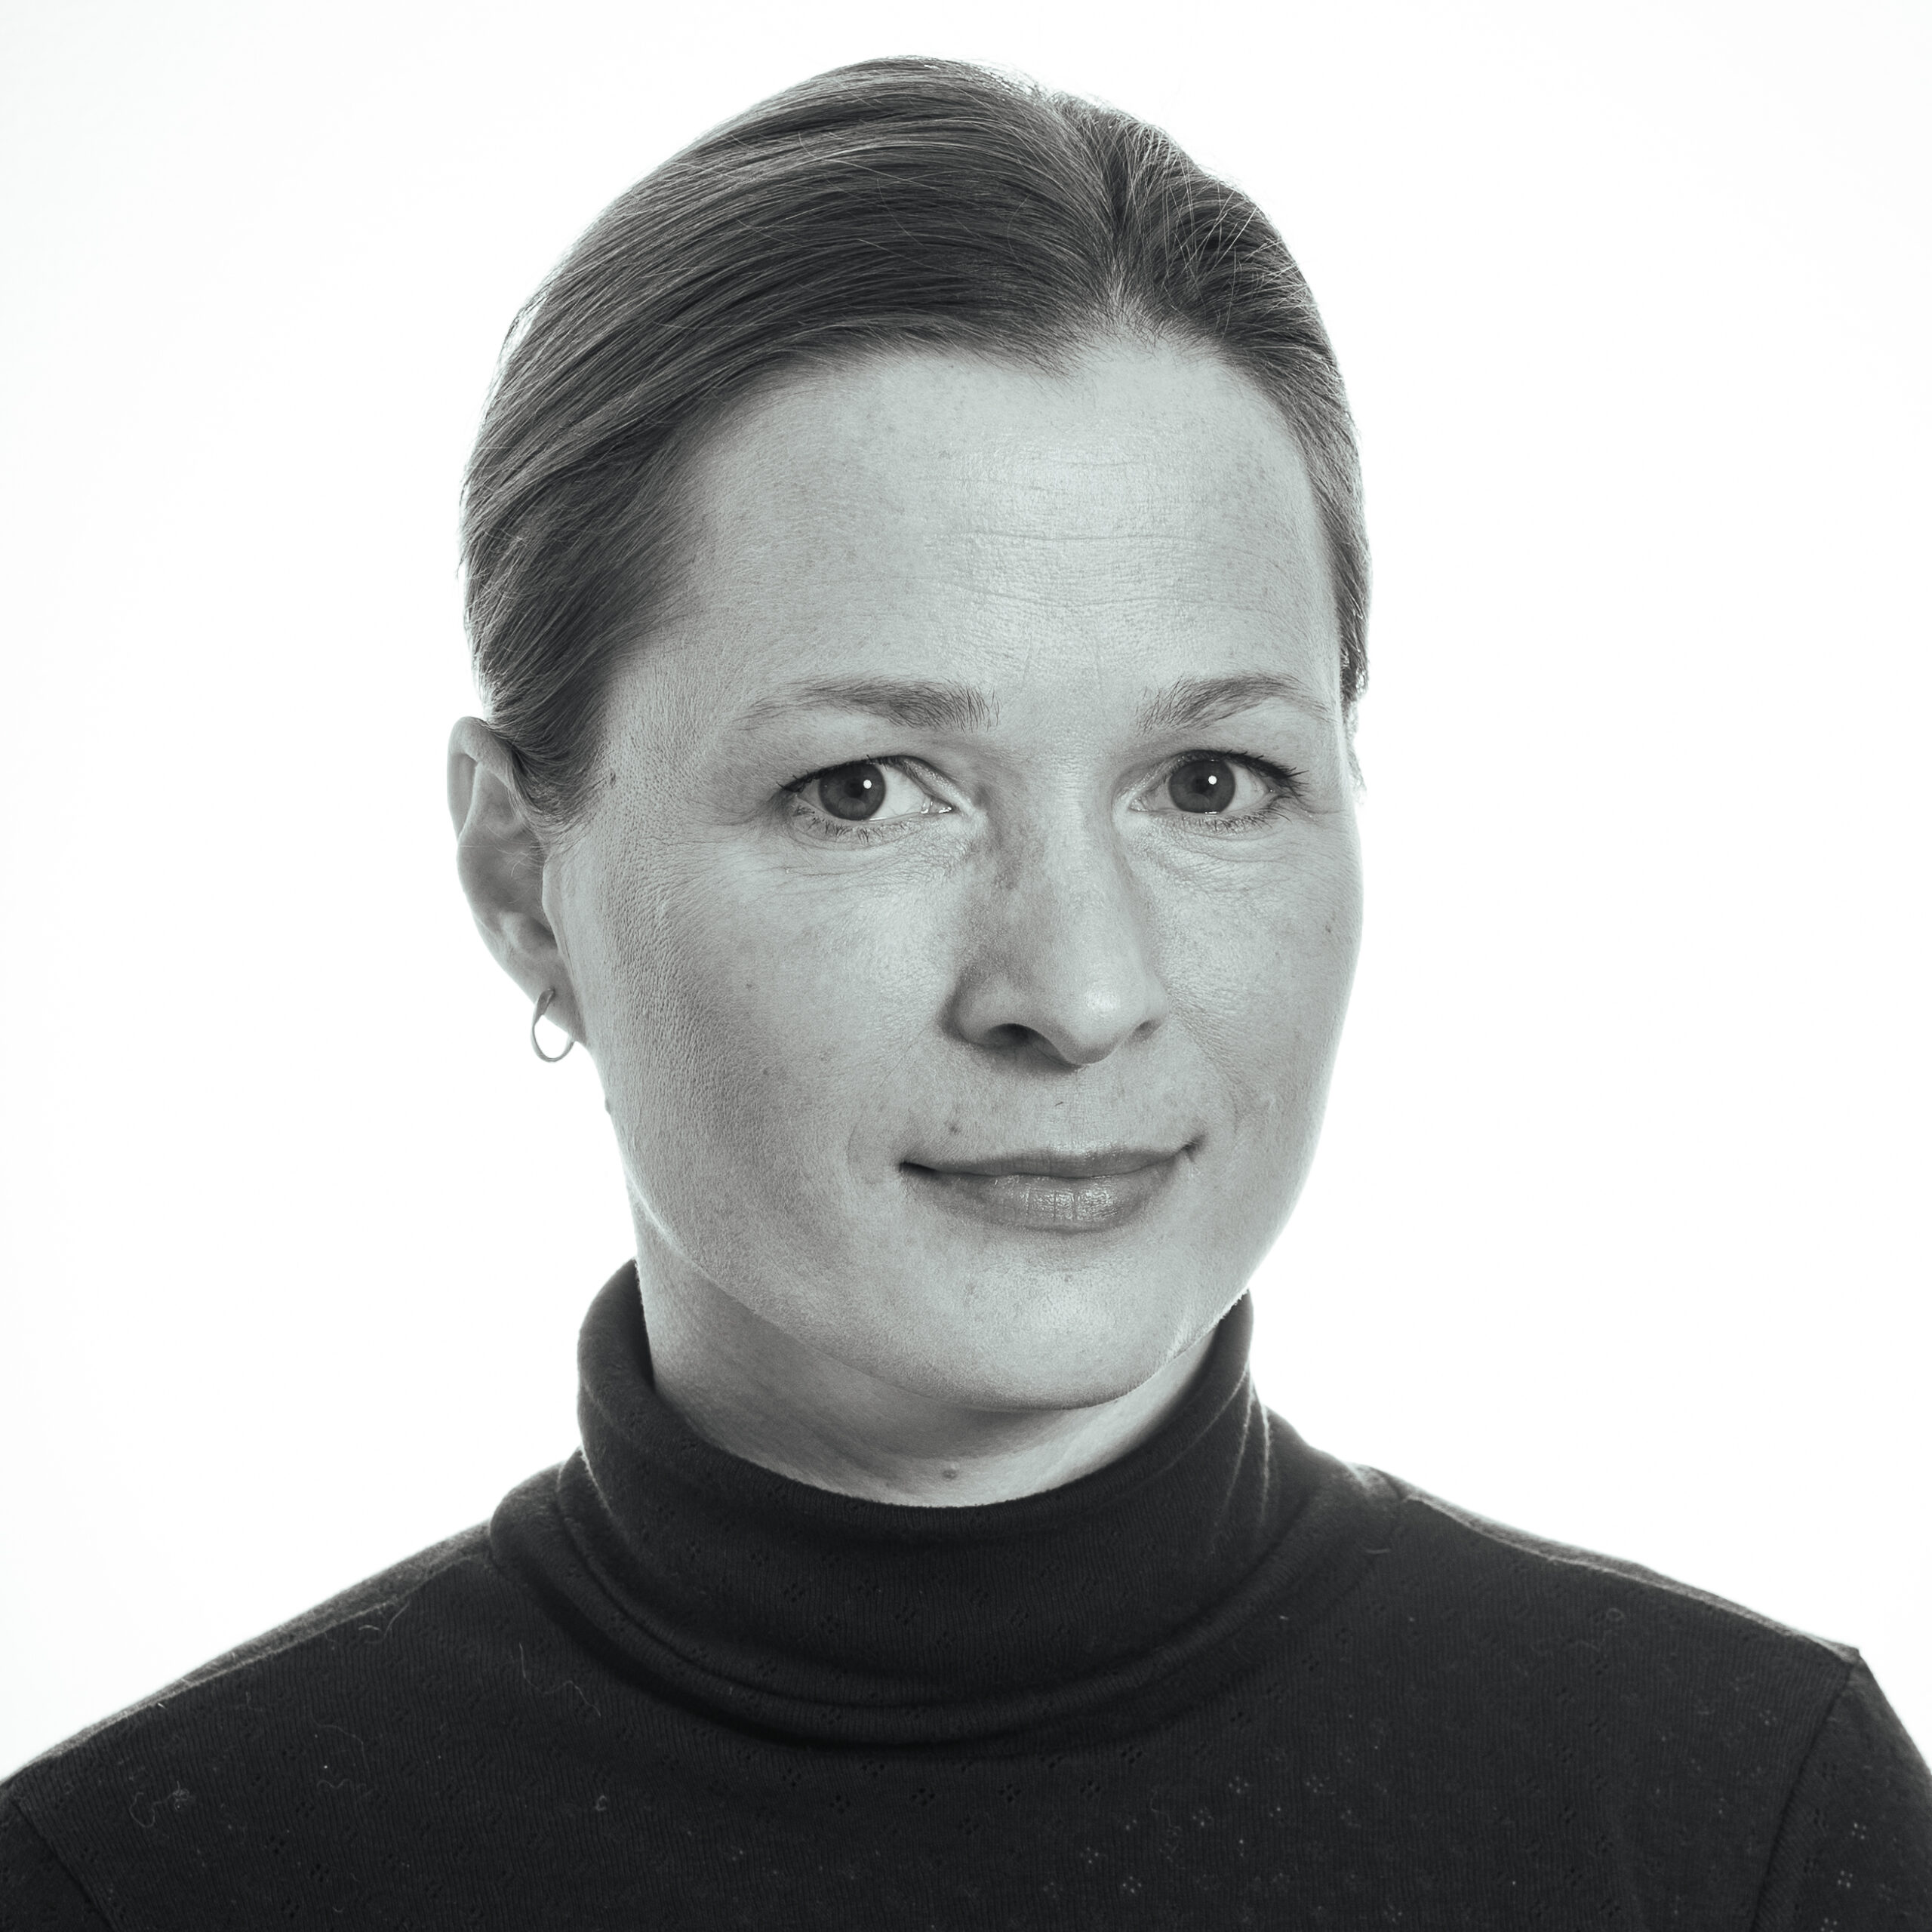 Ananna Lützhøft